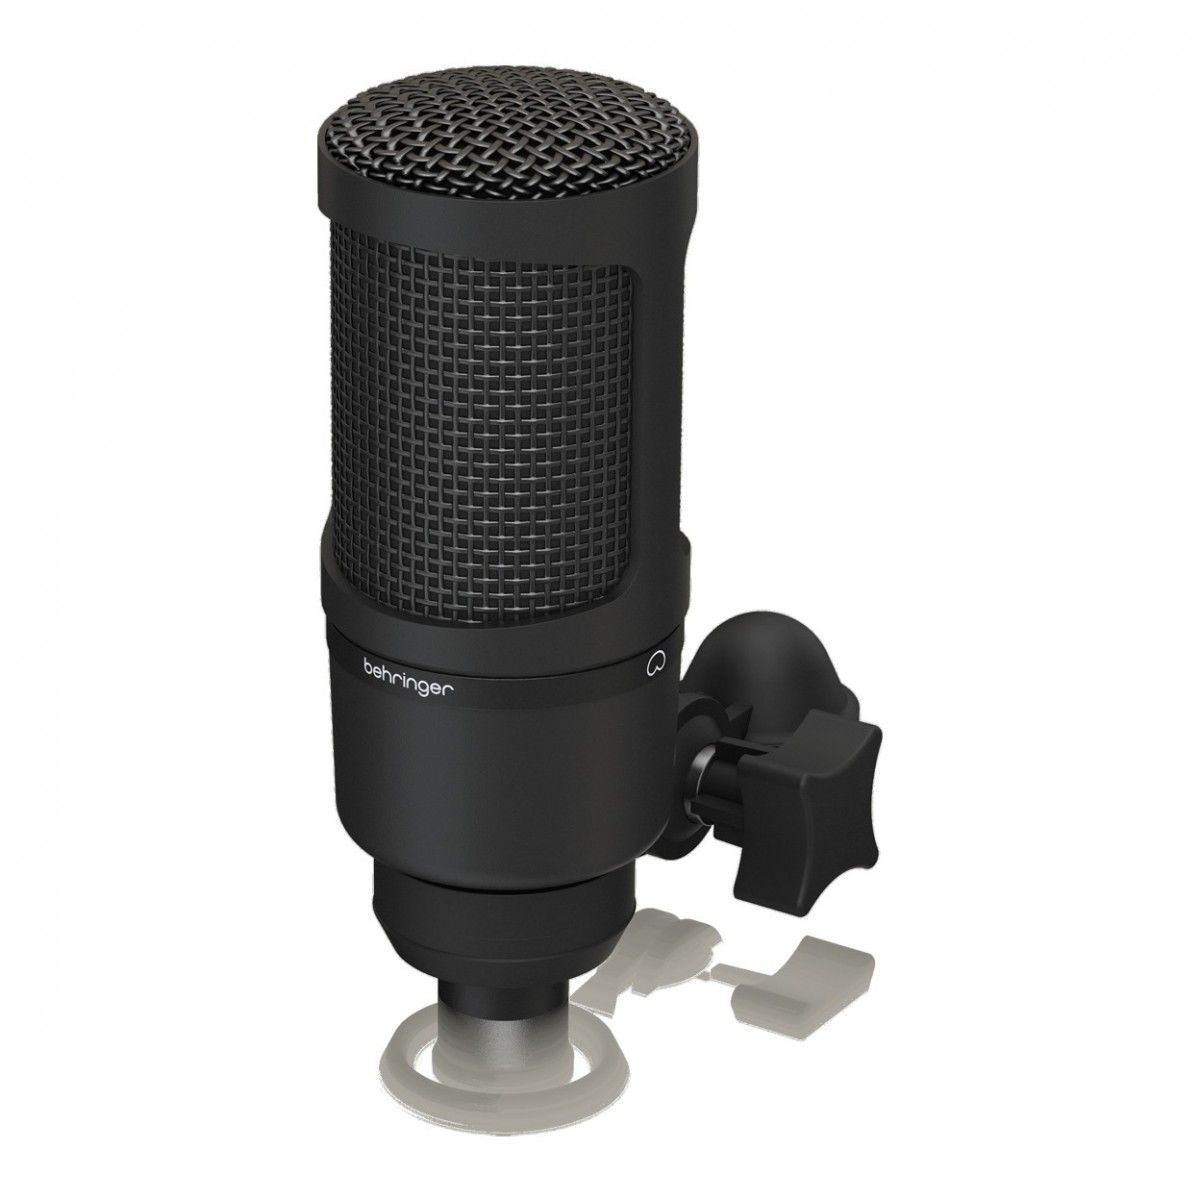 Конденсаторный микрофон BEHRINGER BX2020